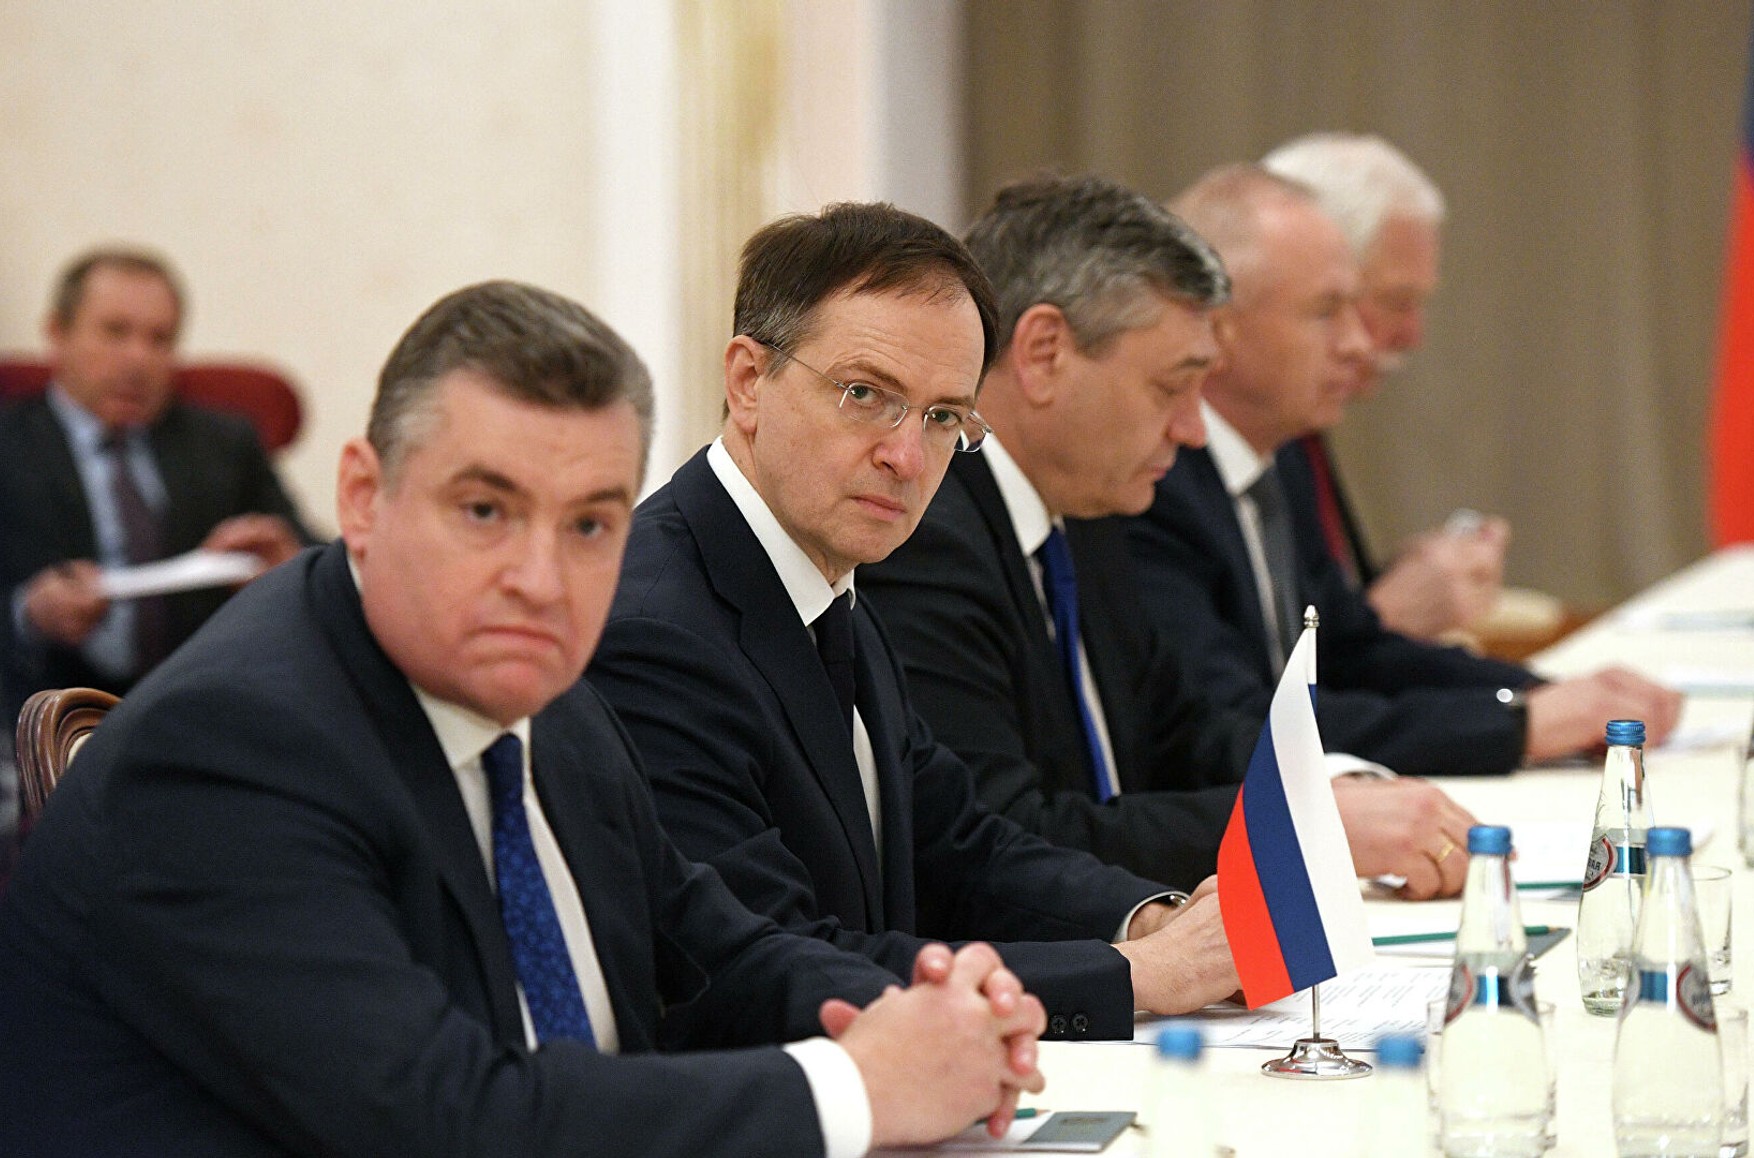 Мединский заявил, что российско-украинские переговоры заморожены по инициативе Украины